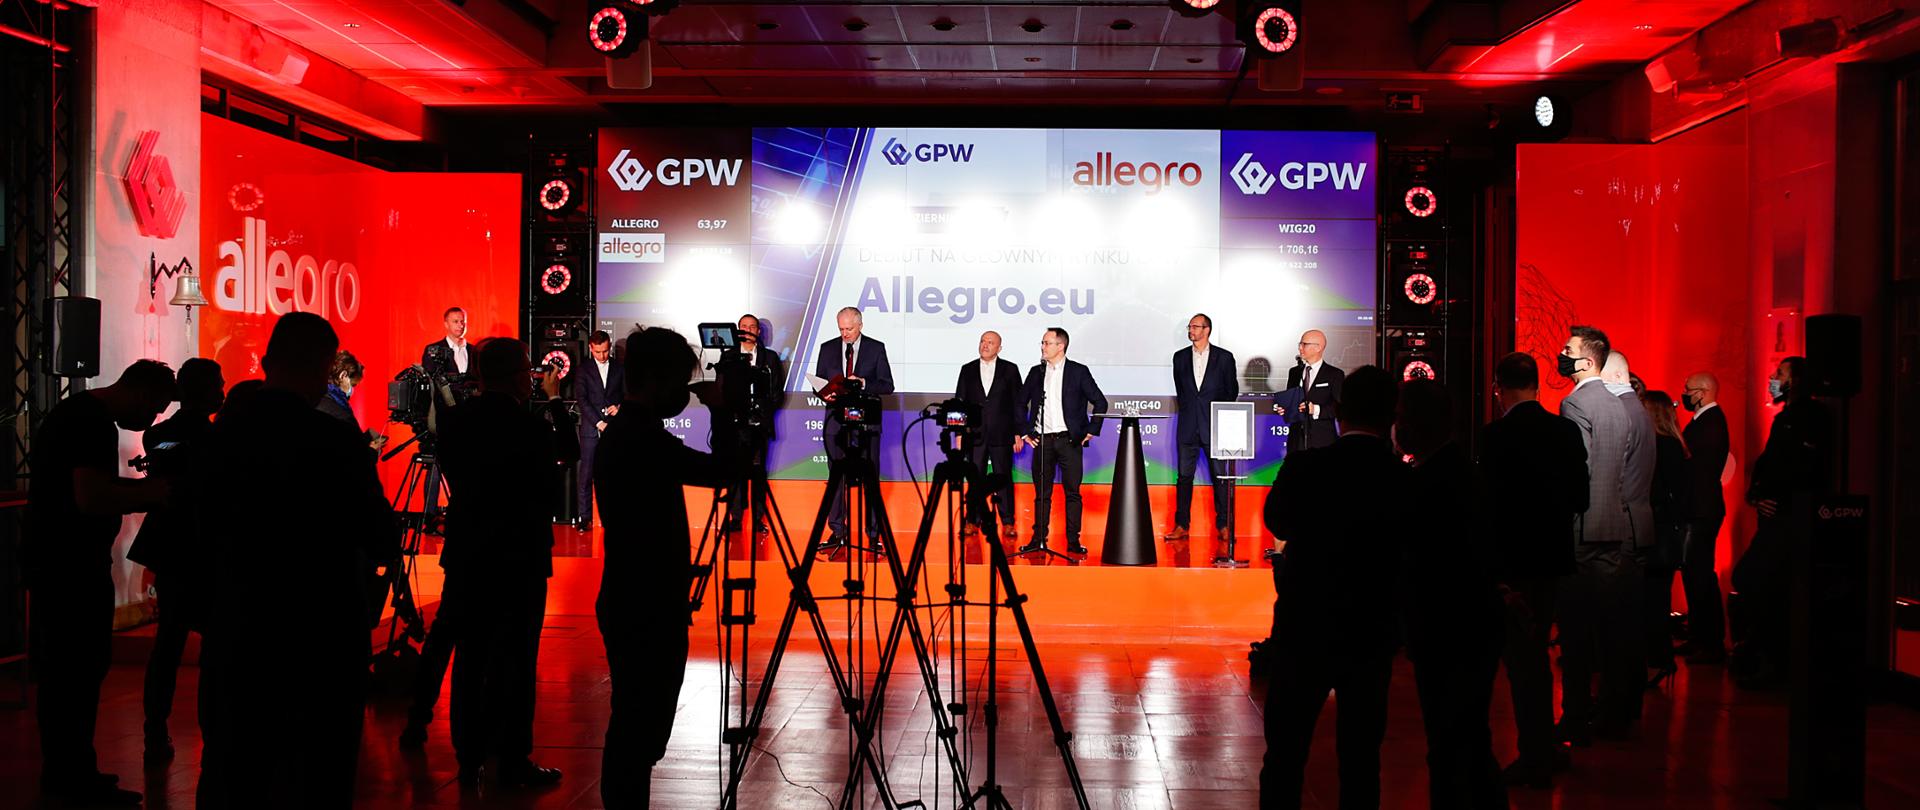 Widok na scenę, na niej wicepremier Jarosław Gowin w towarzystwie przedstawicieli GPW i Allegro.